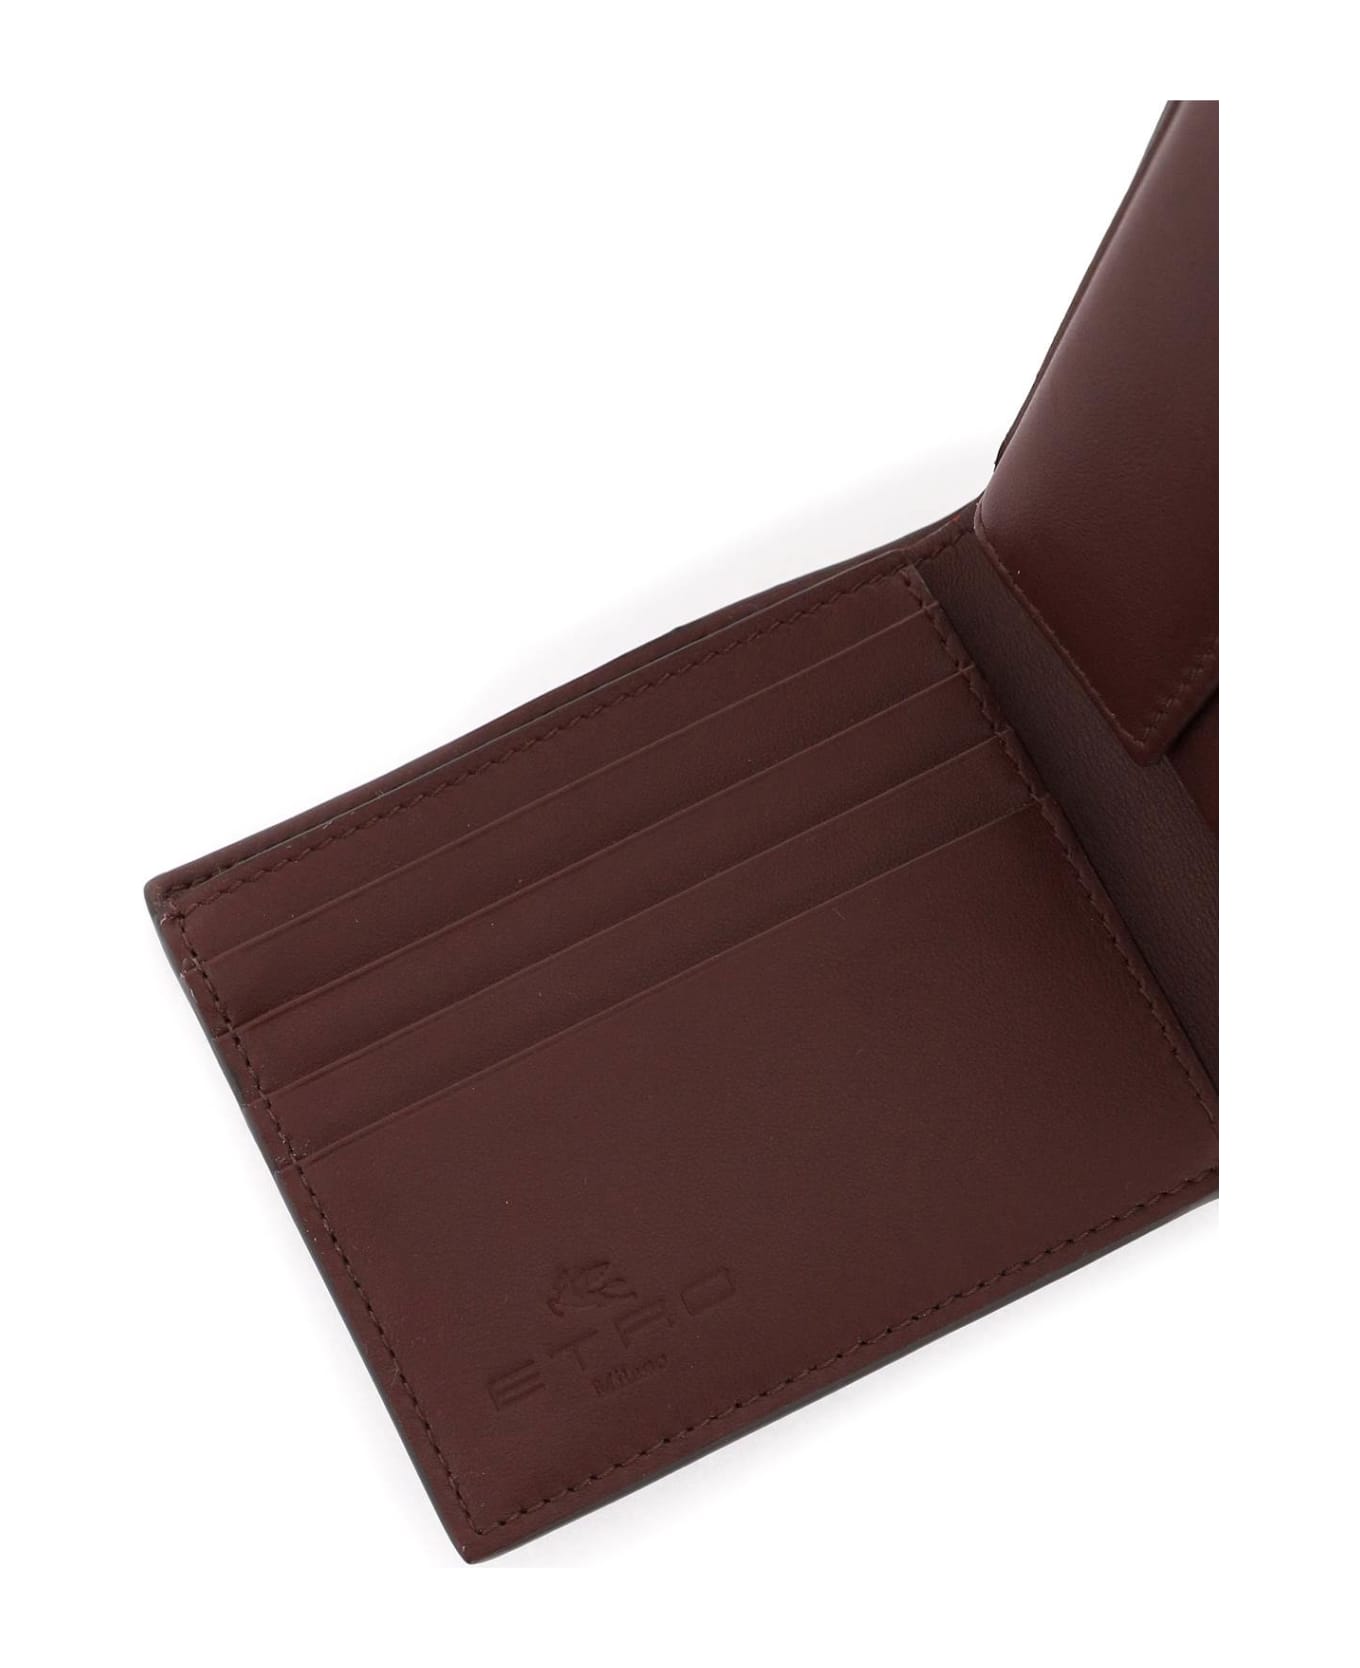 Etro Paisley Bifold Wallet With Pegaso Logo - Brown 財布